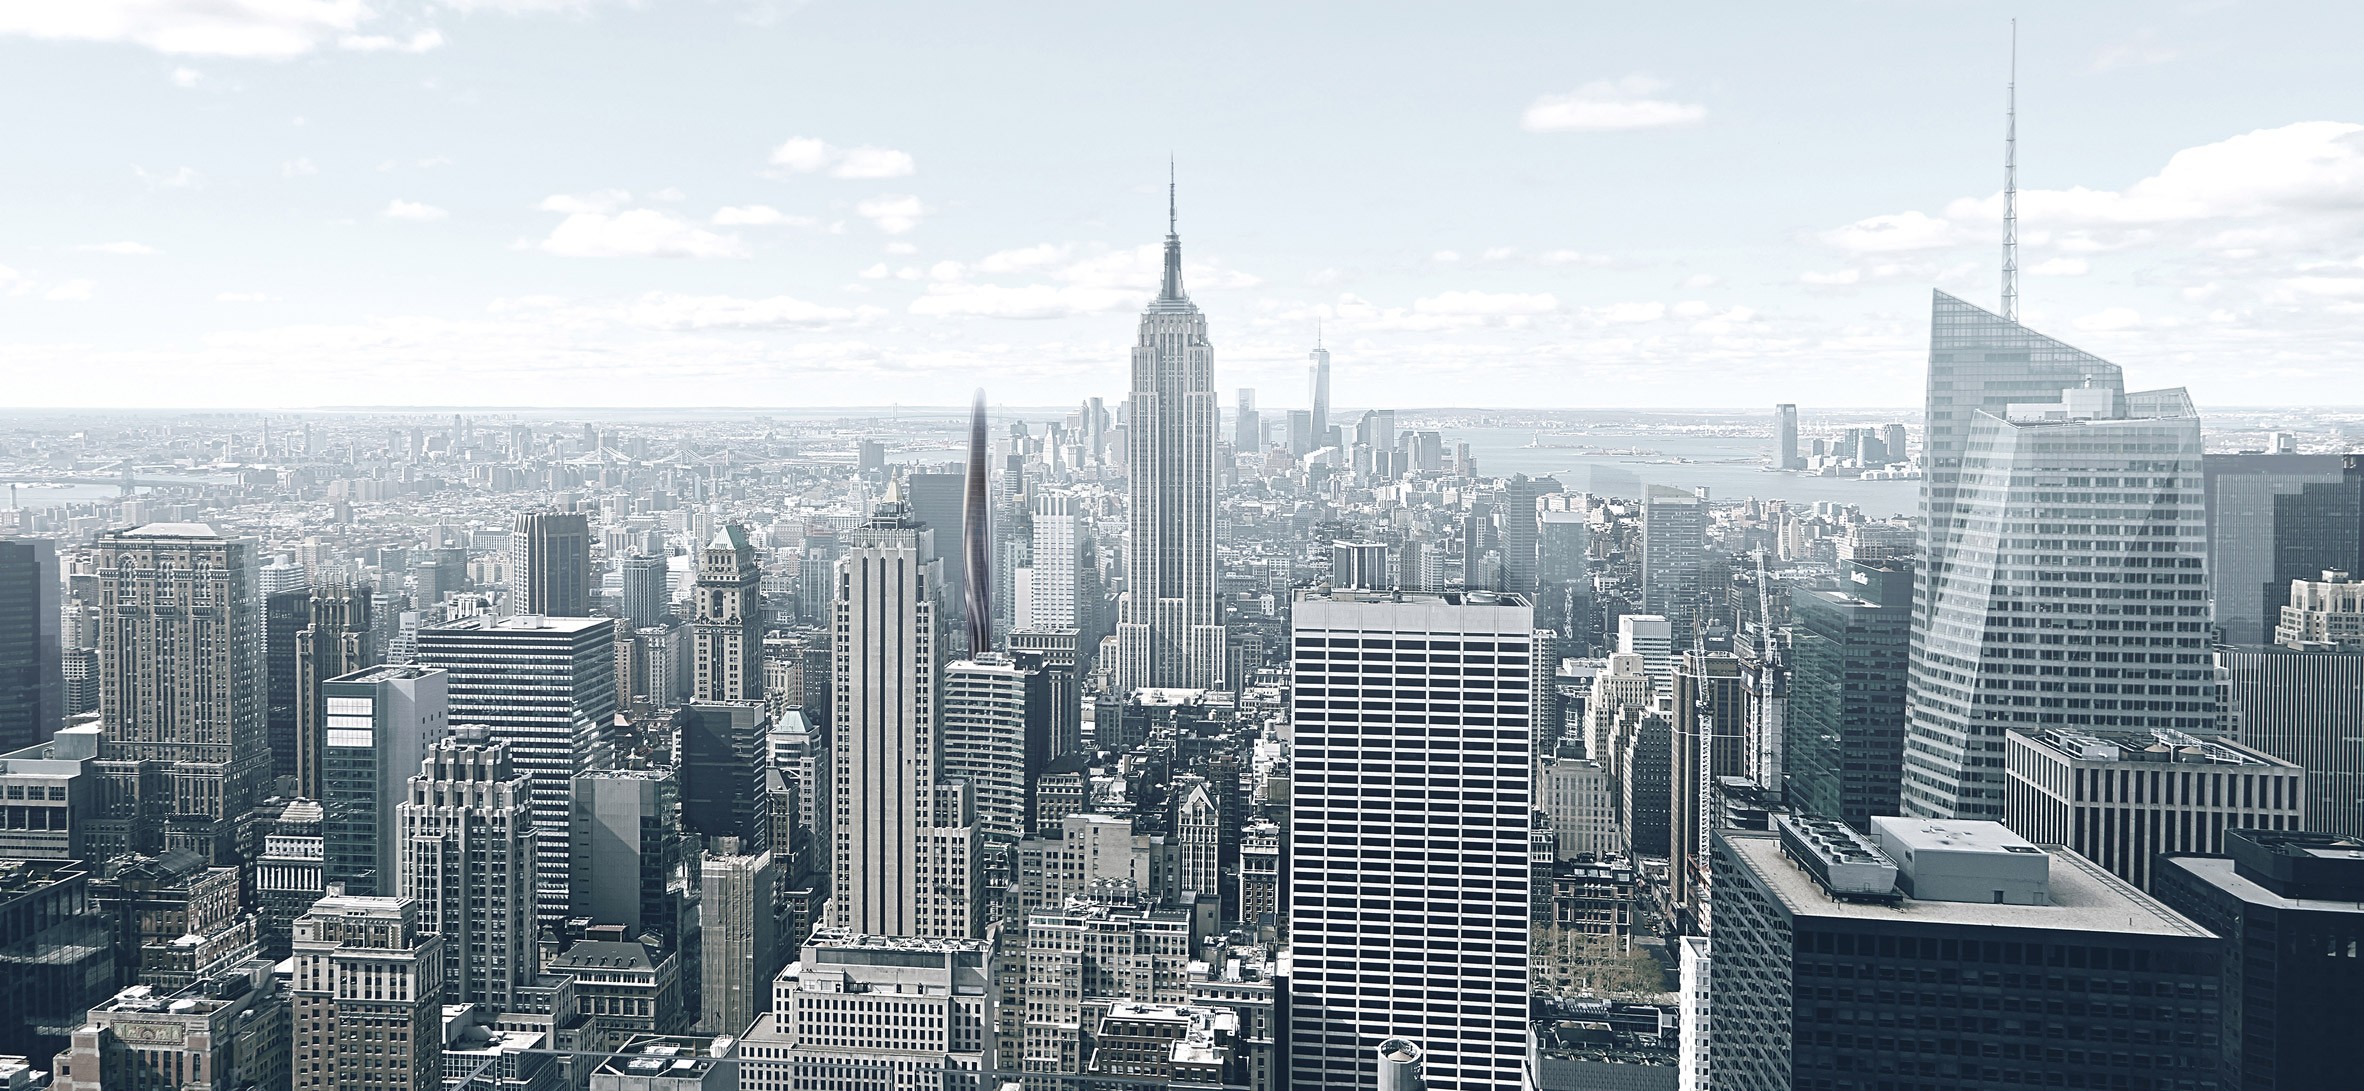 Arranha-céu orgânico promete suavizar paisagem em Nova York (Foto: Divulgação)